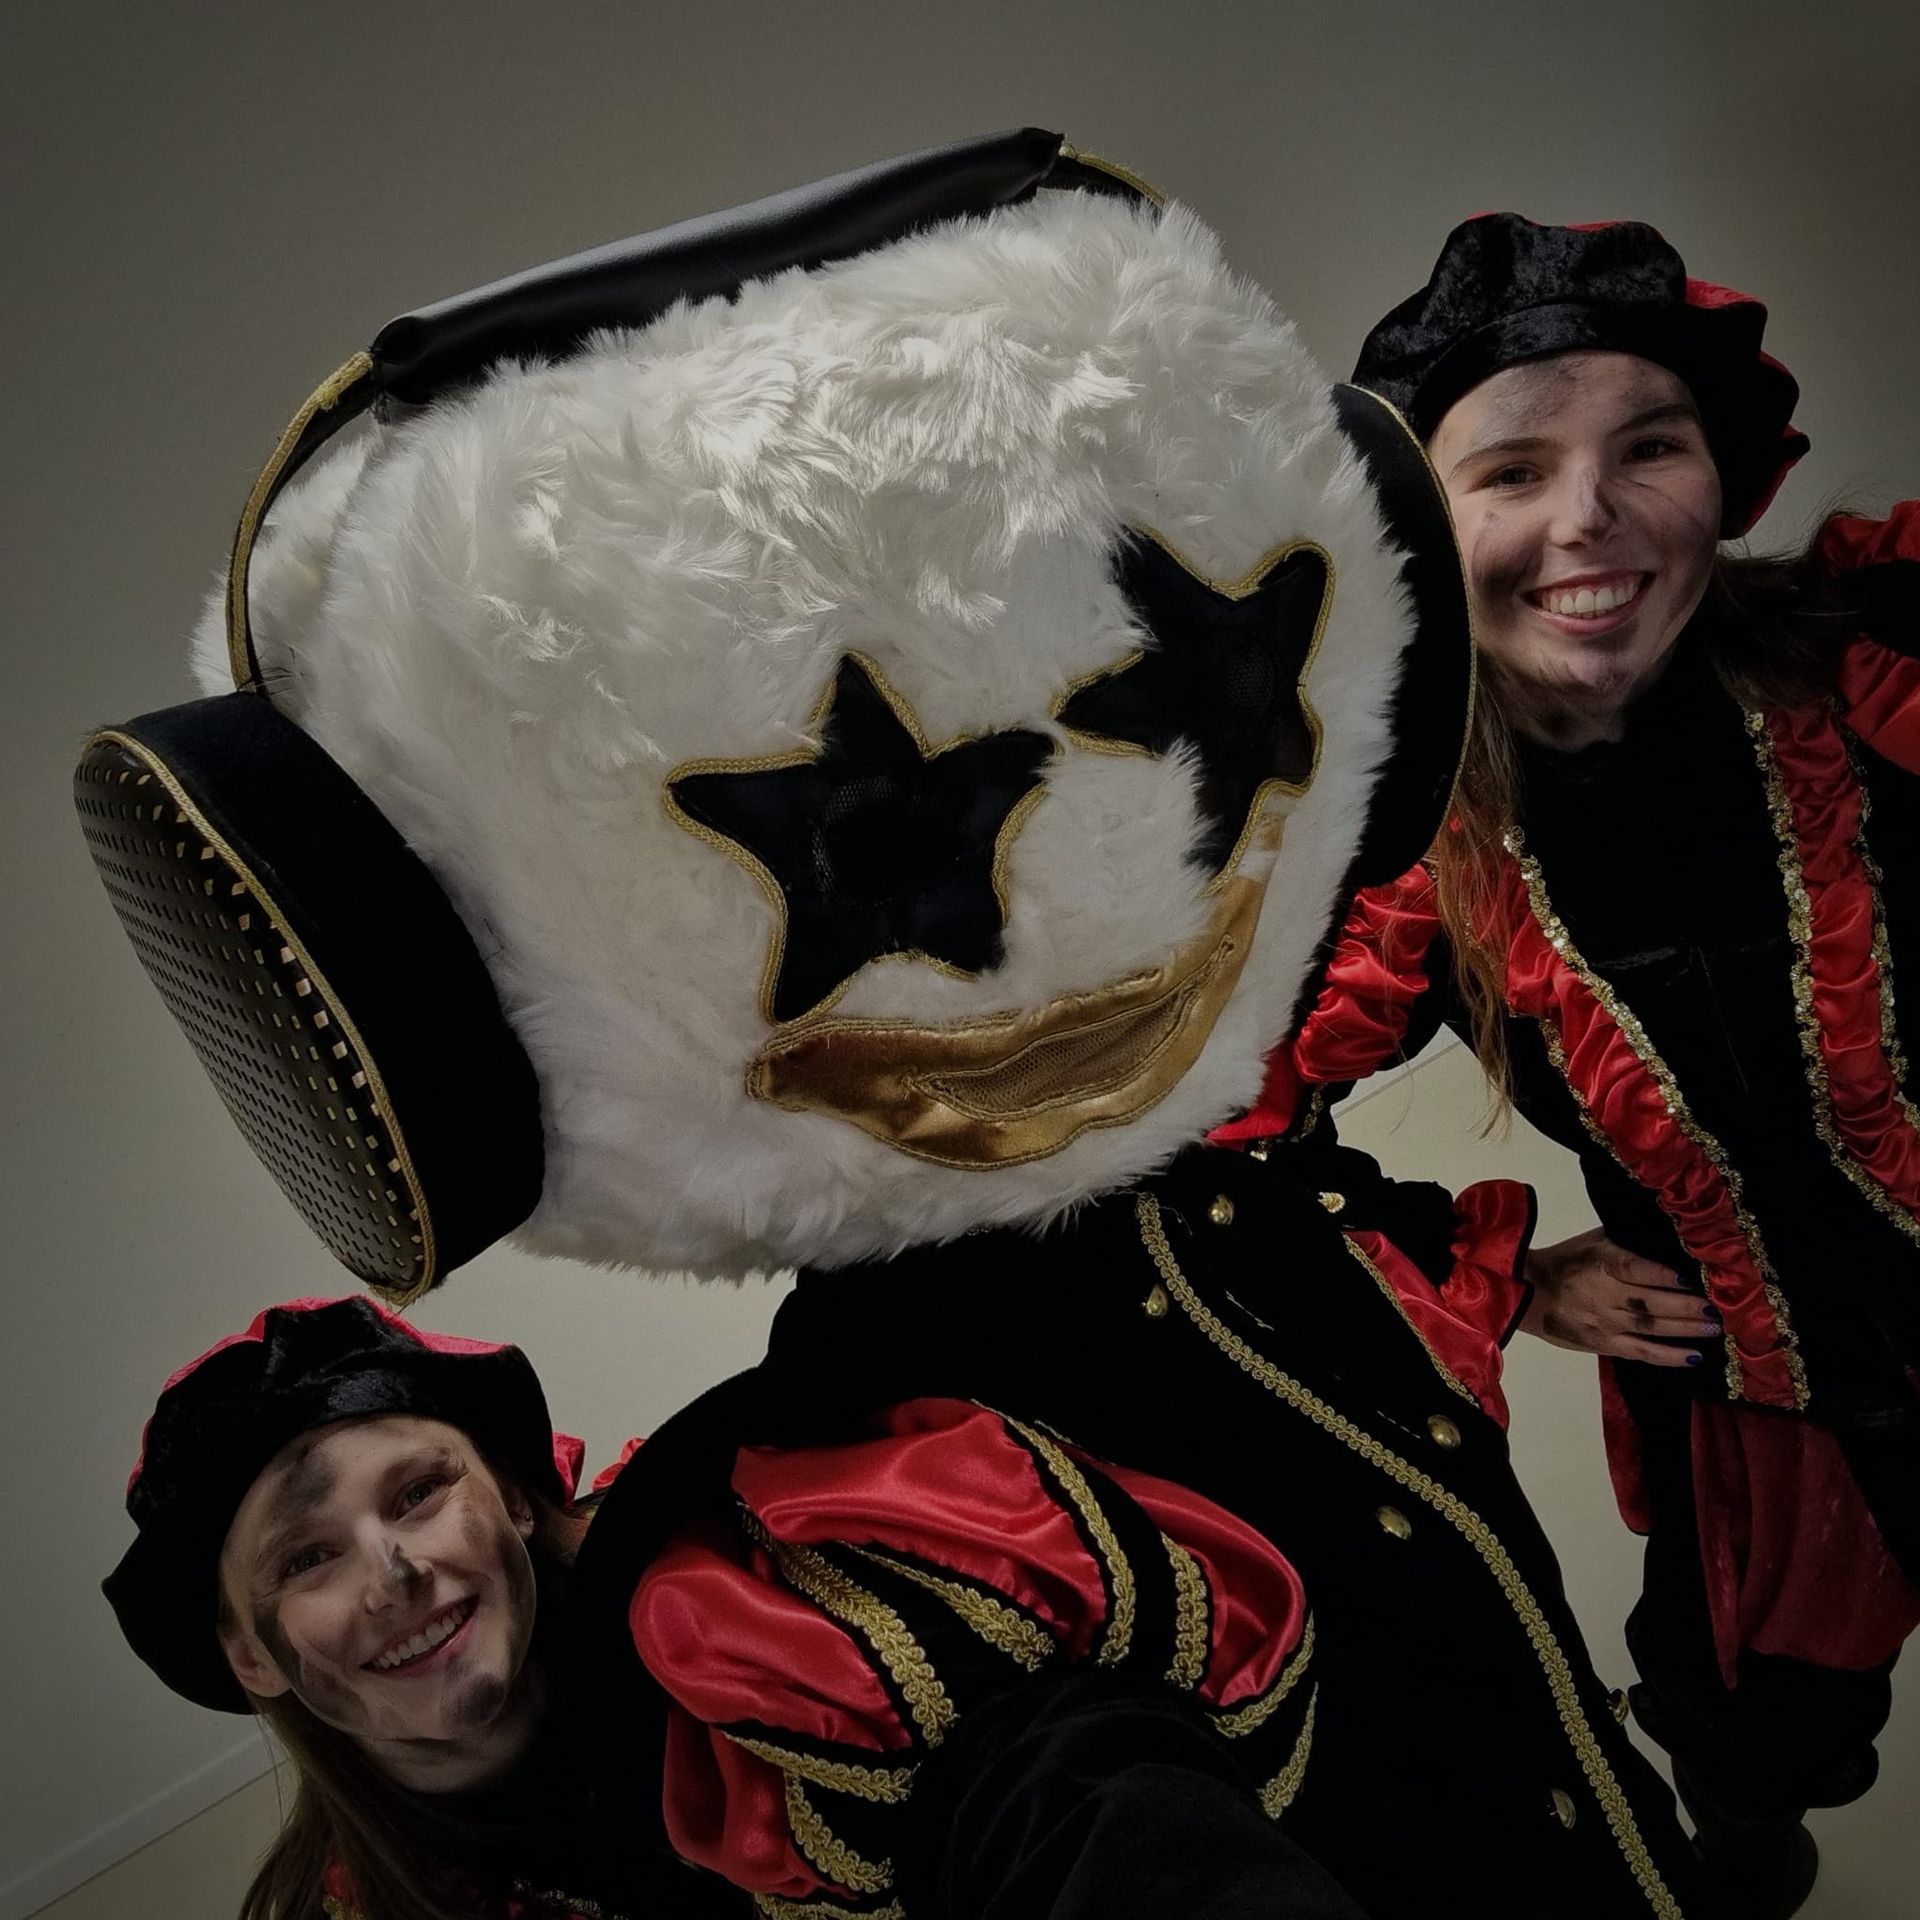 Unieke Pietendisco voor een magische Sinterklaaservaring met danseressen en DJ